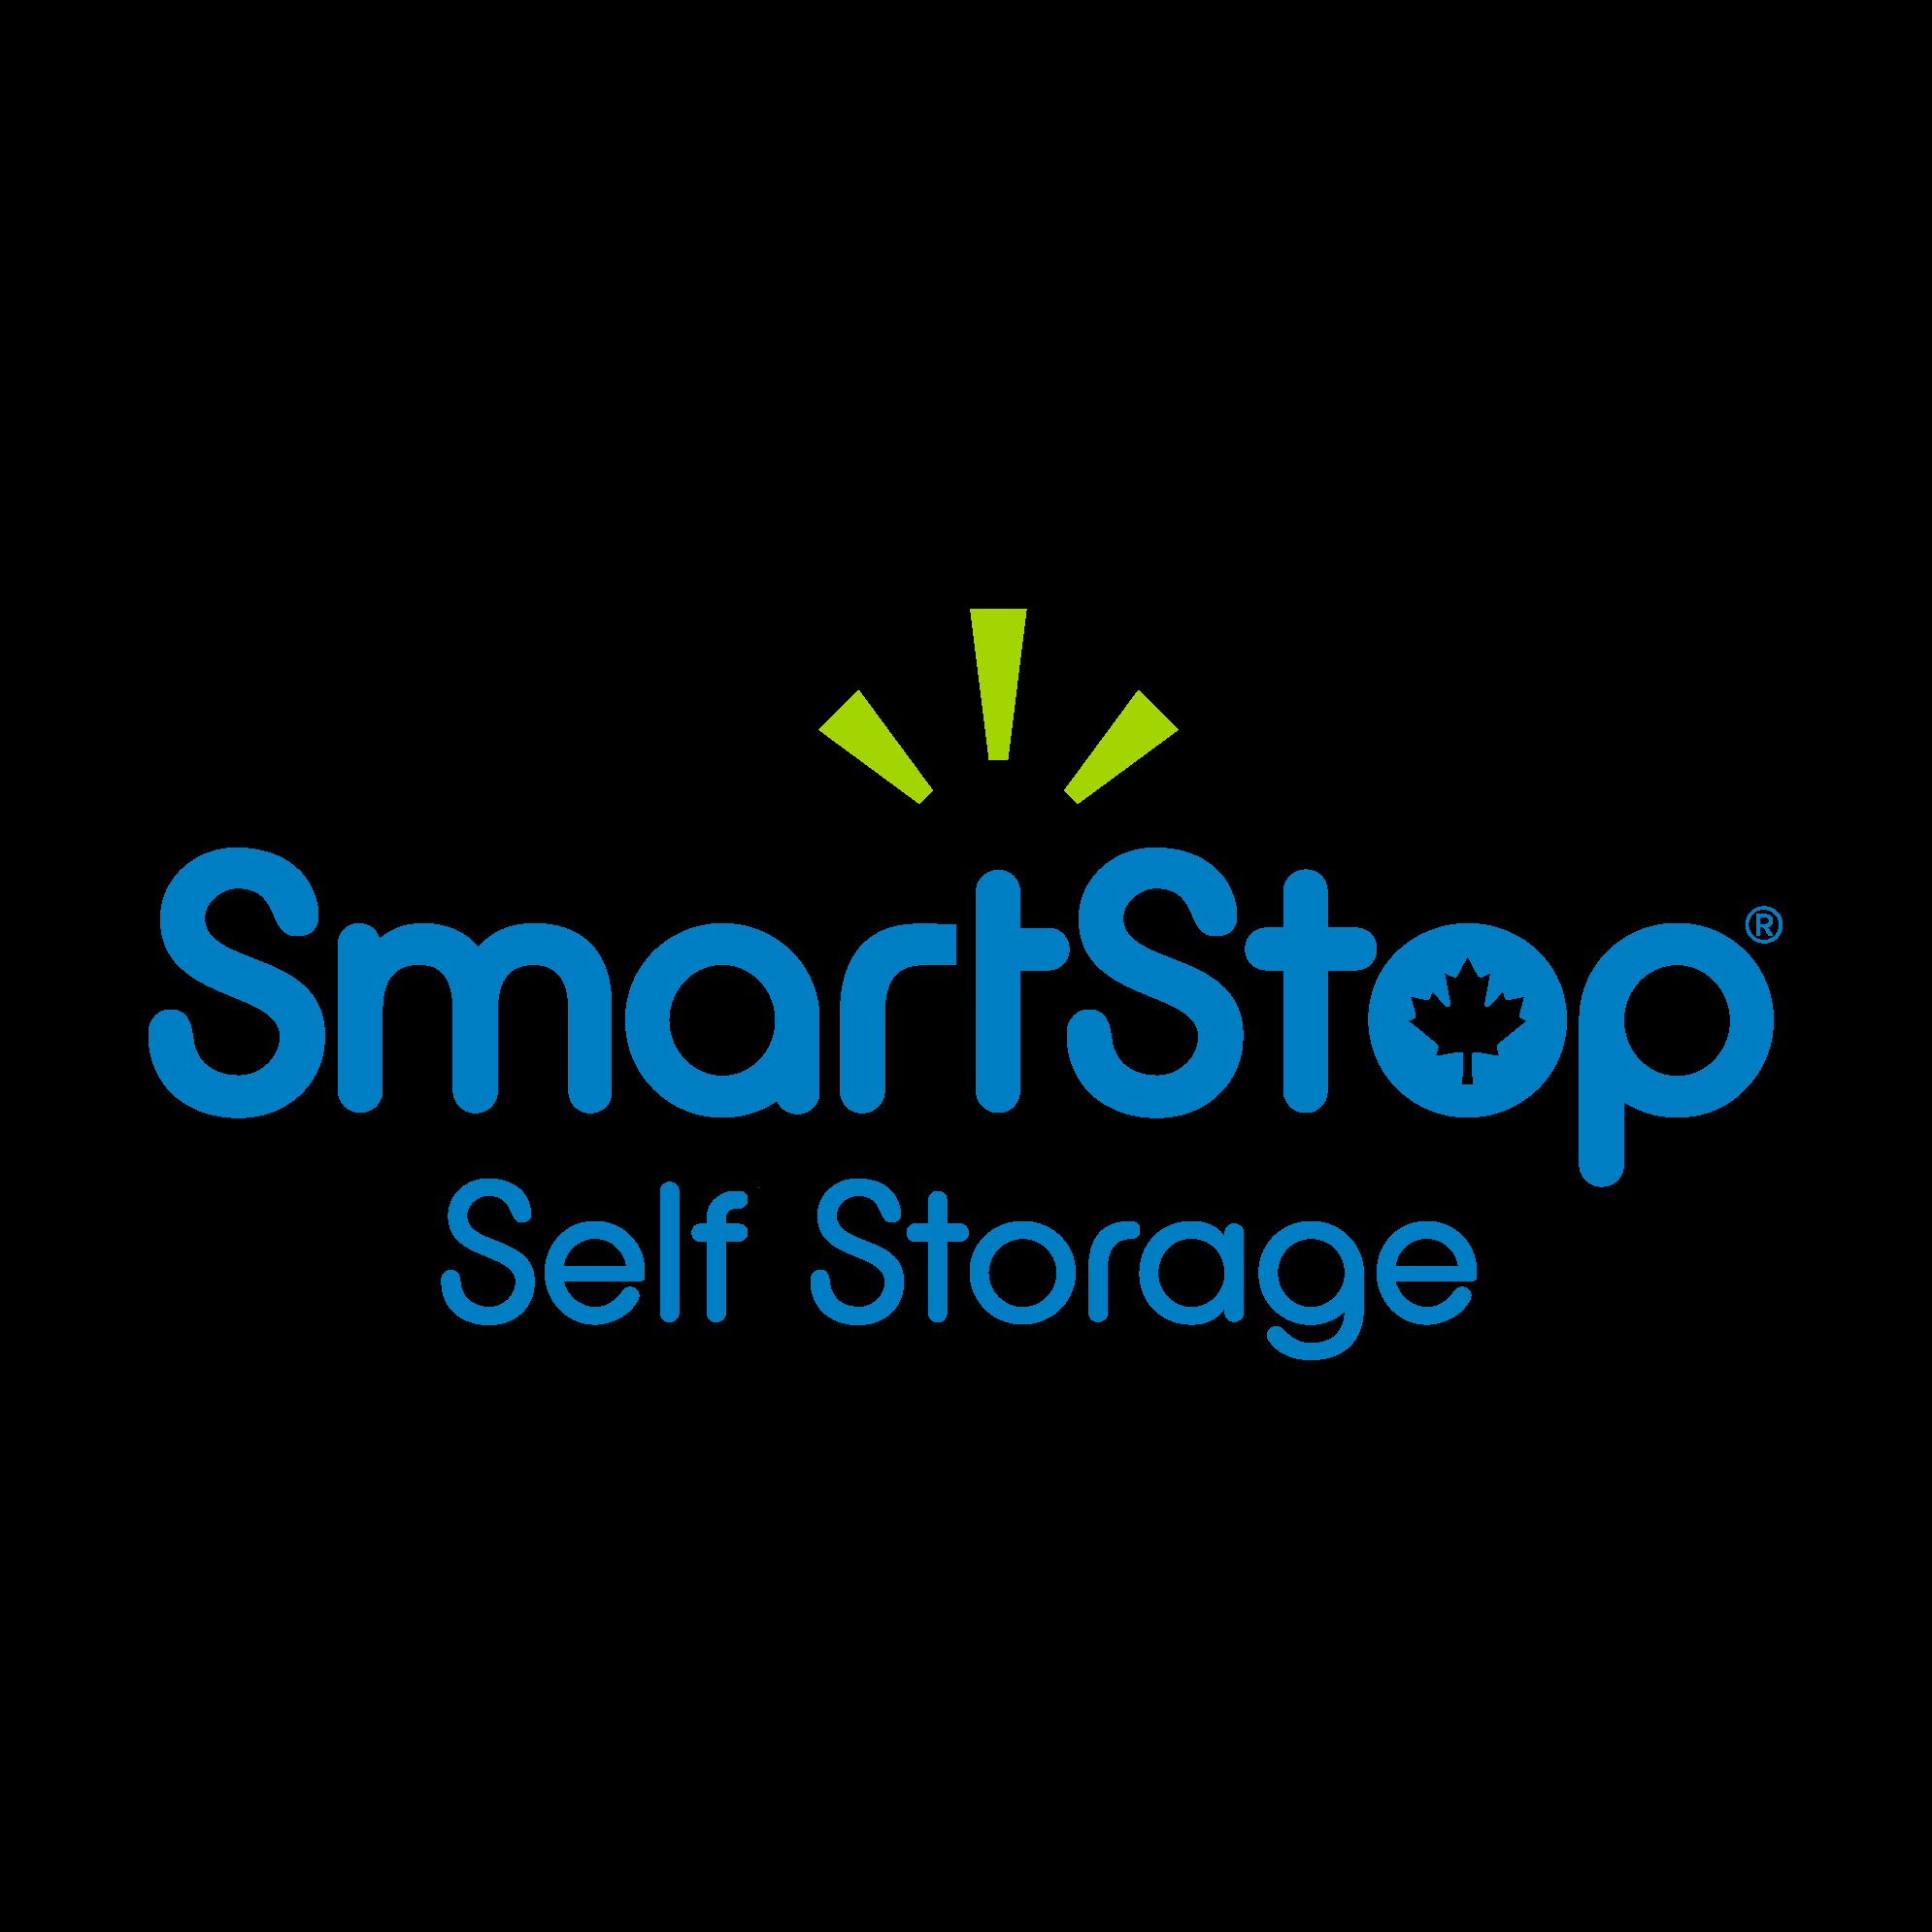 SmartStop Self Storage - Brampton - Self-Storage